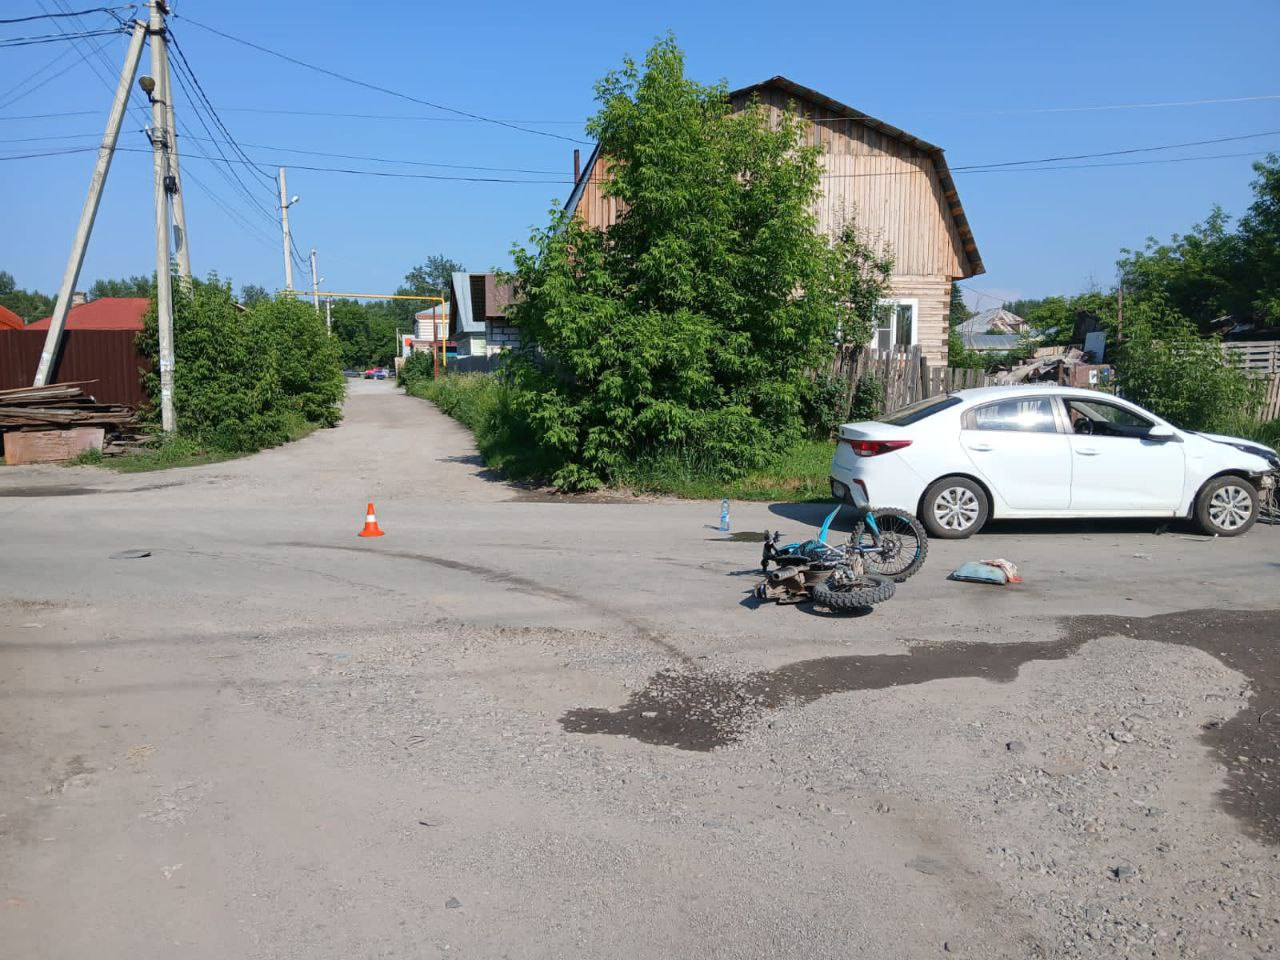 Не уступил дорогу: 14-летний мальчик на питбайке пострадал в ДТП с Kia в Новосибирске